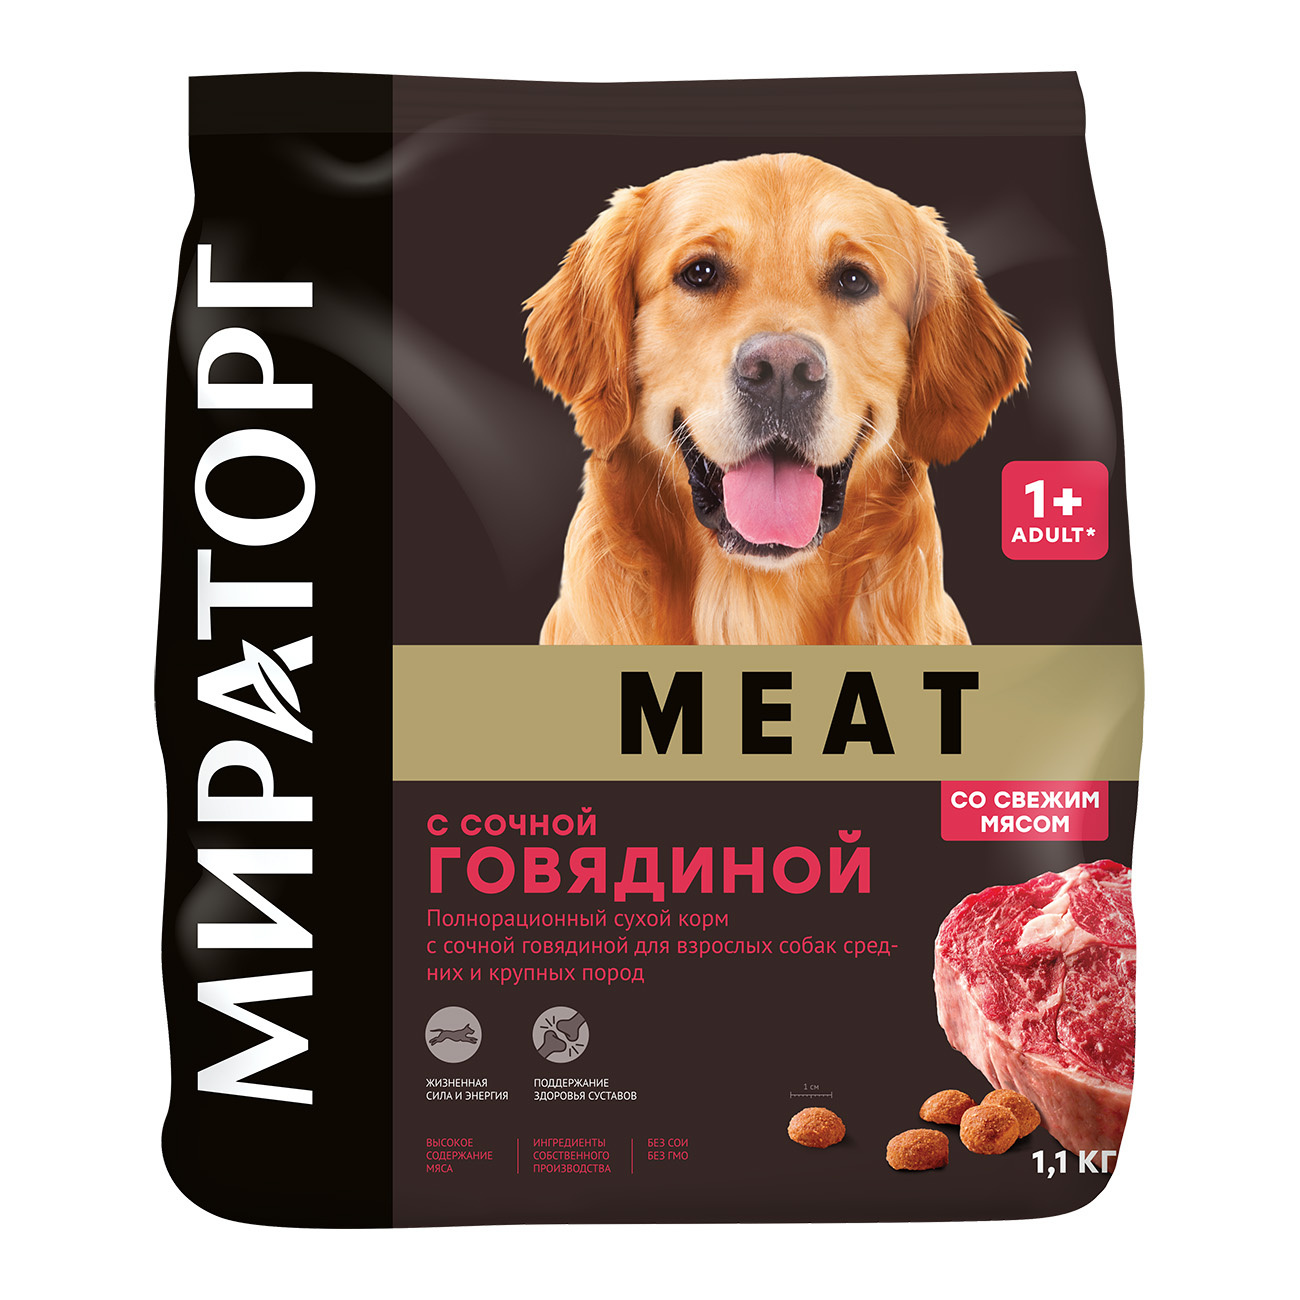 Мираторг Мираторг полнорационный сухой корм для взрослых собак средних и крупных пород с сочной говядиной (10 кг)